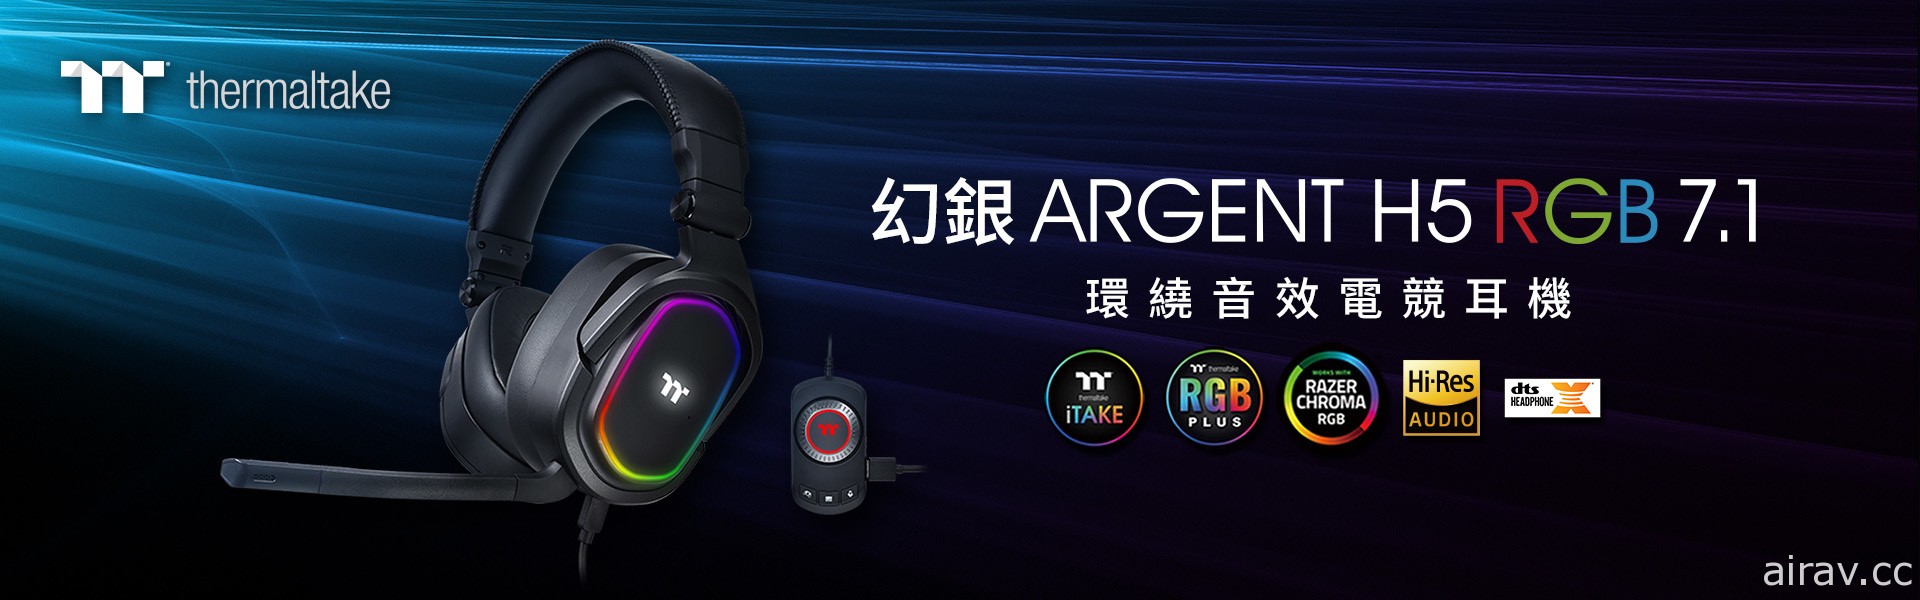 曜越幻銀 ARGENT H5 RGB 7.1 環繞音效電競耳機 8 月上市